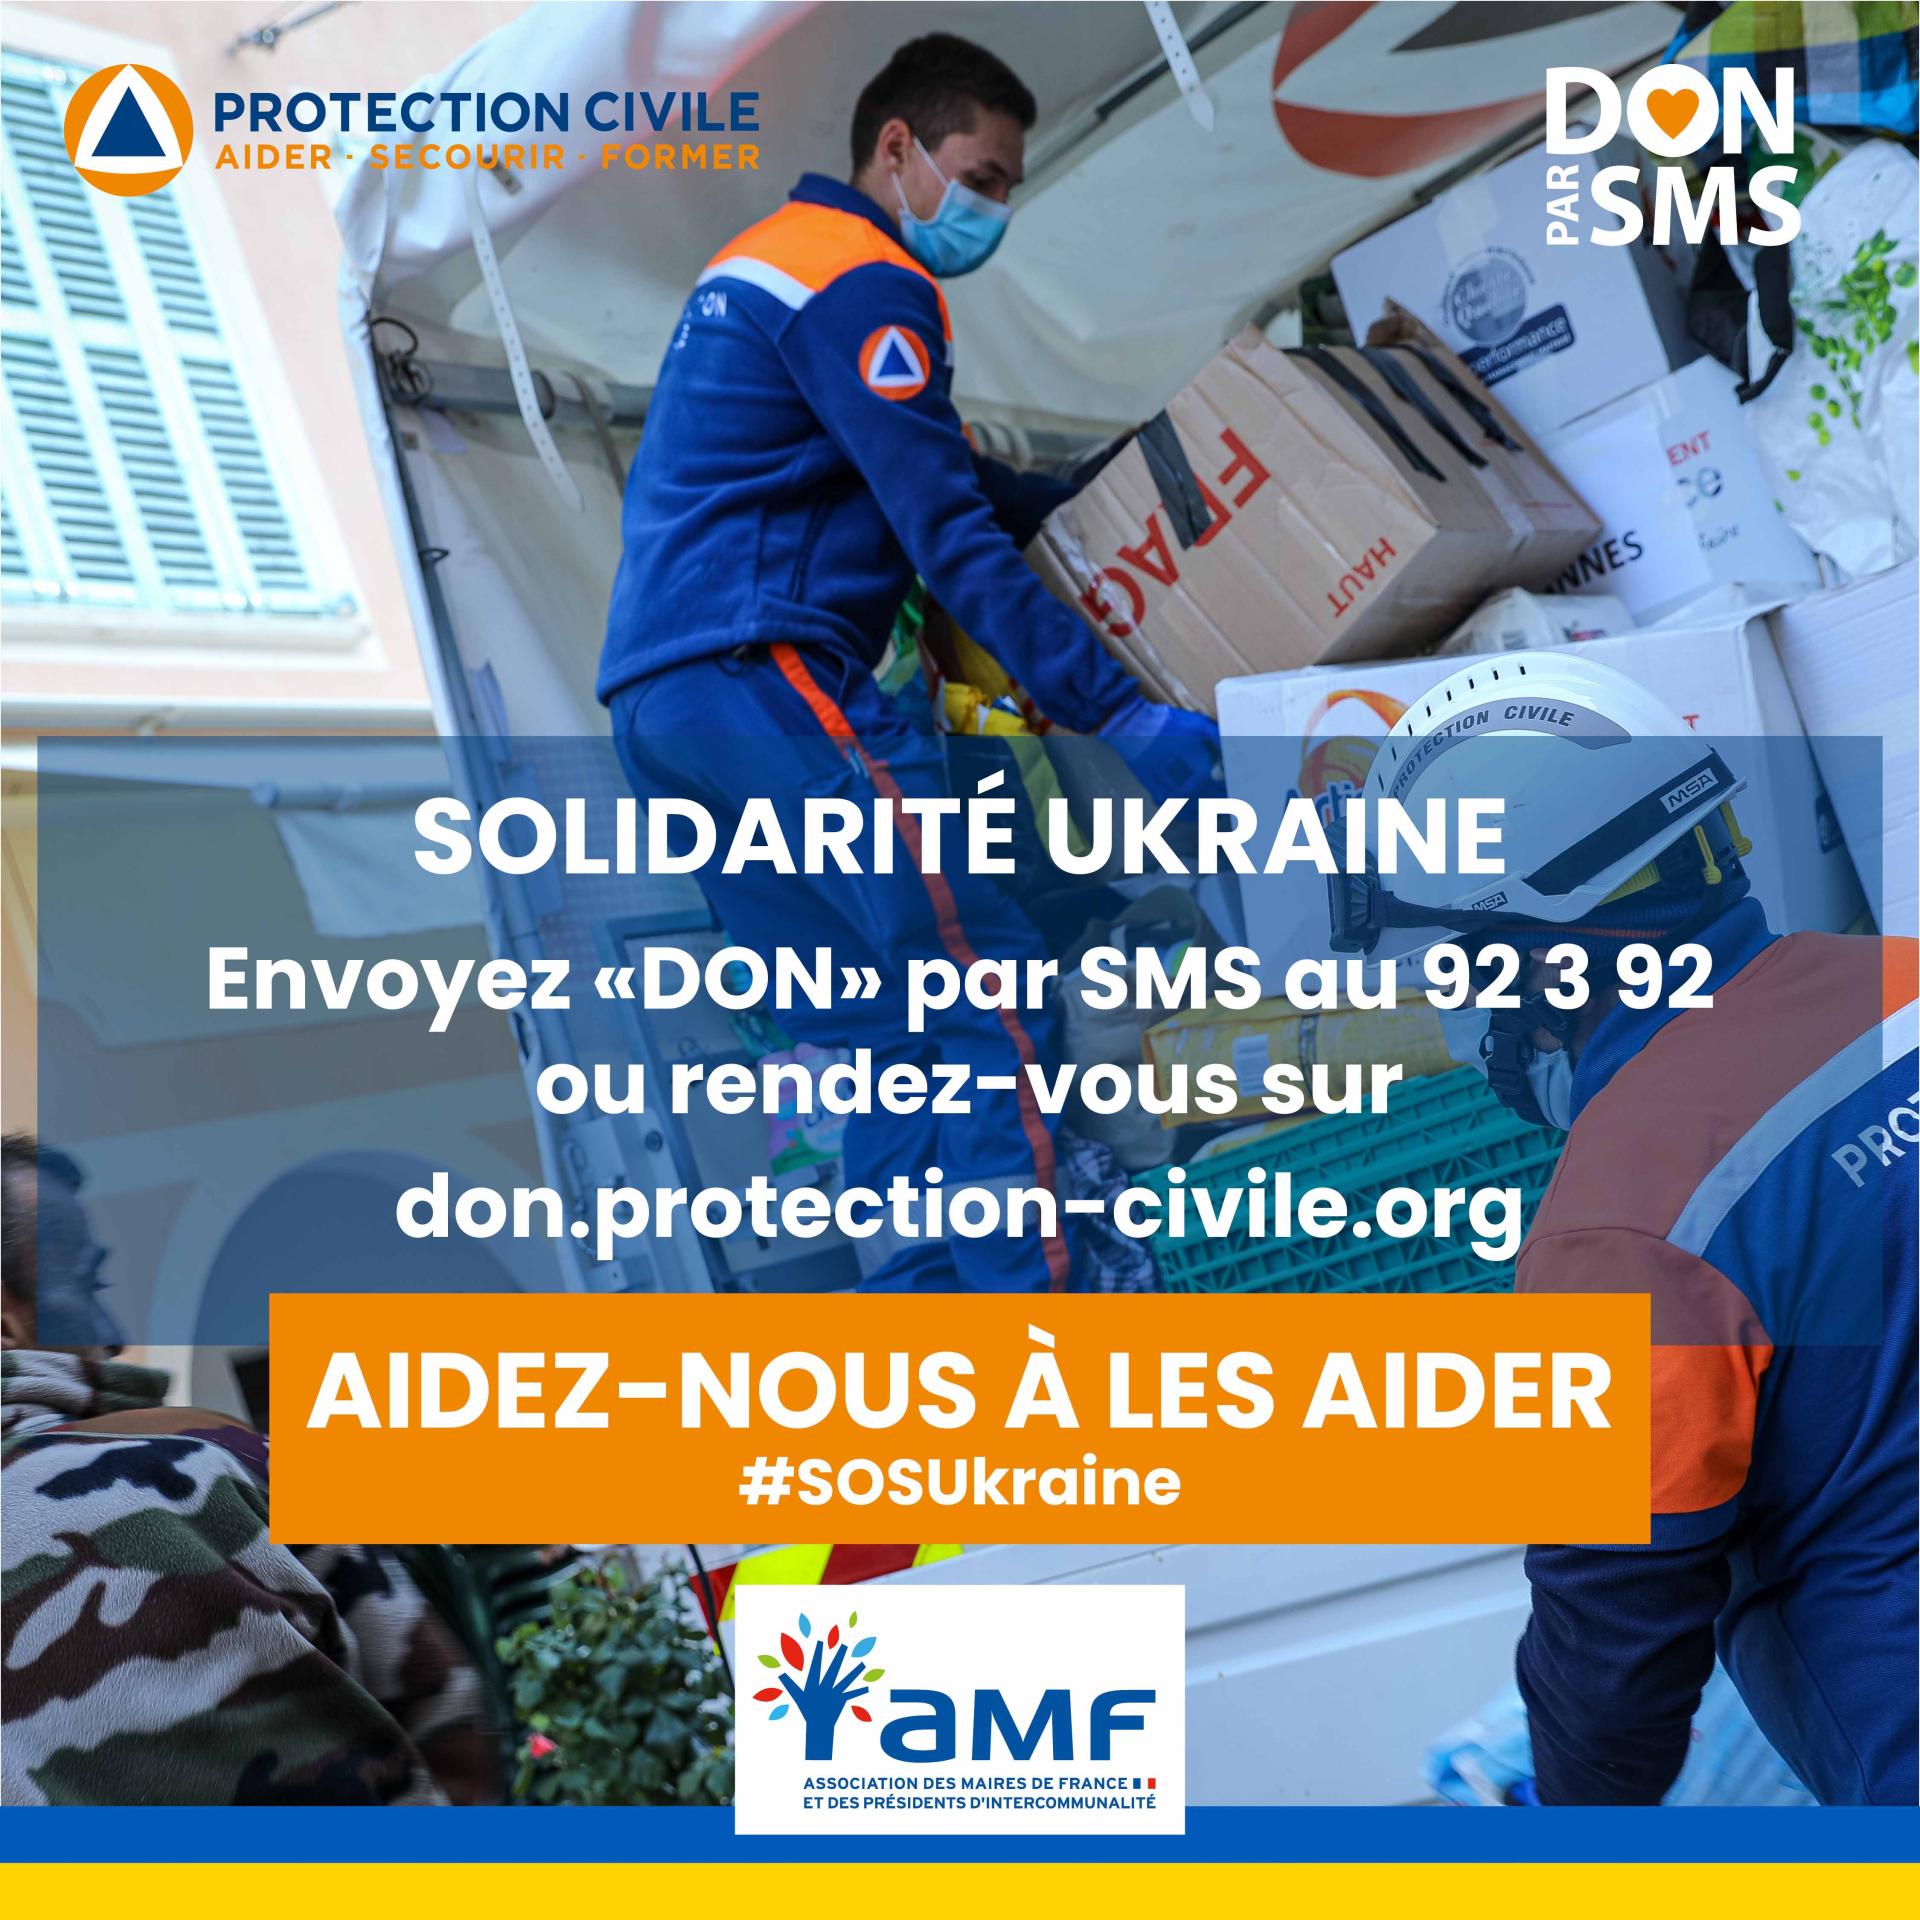 Solidarité Ukraine post don